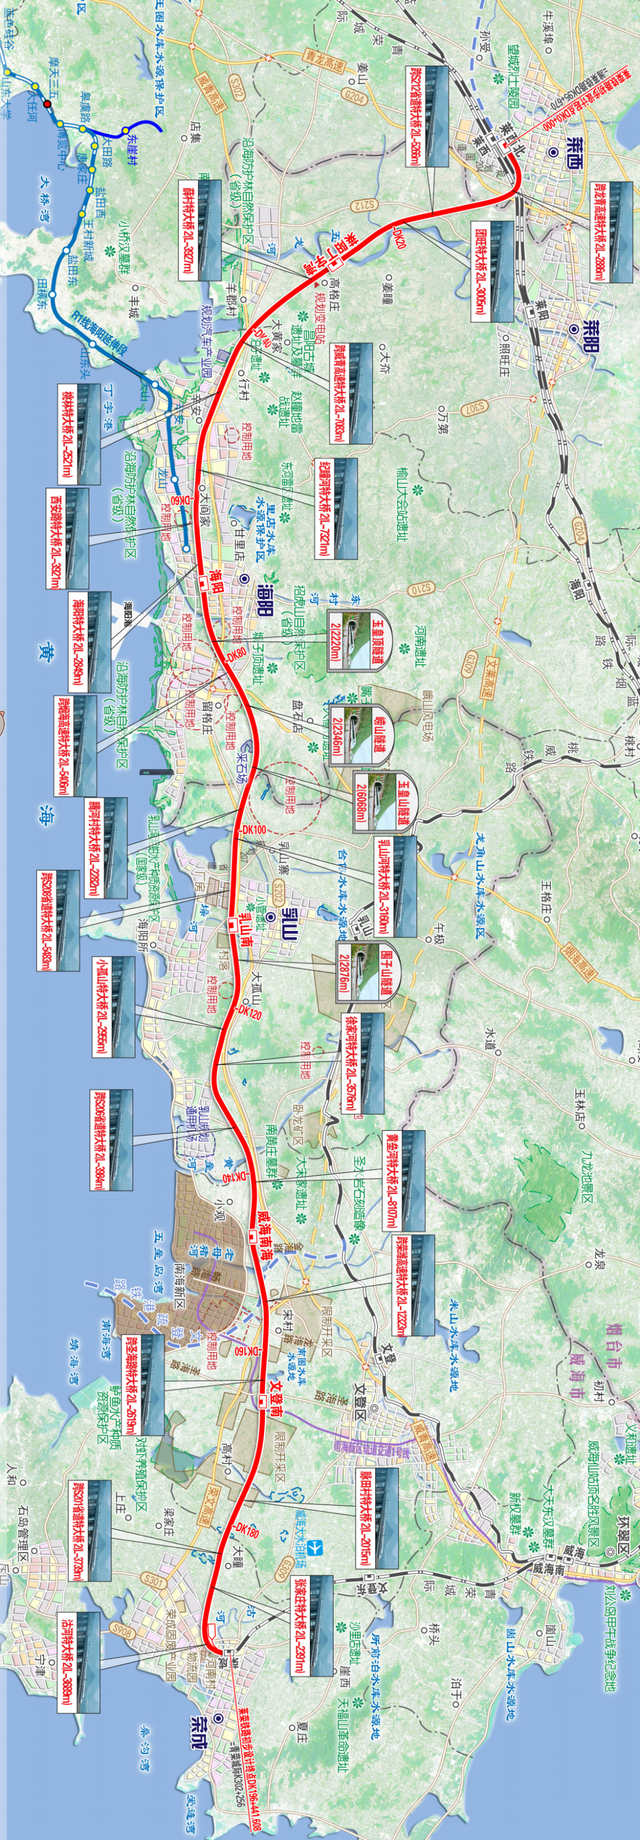 海阳高铁规划图图片